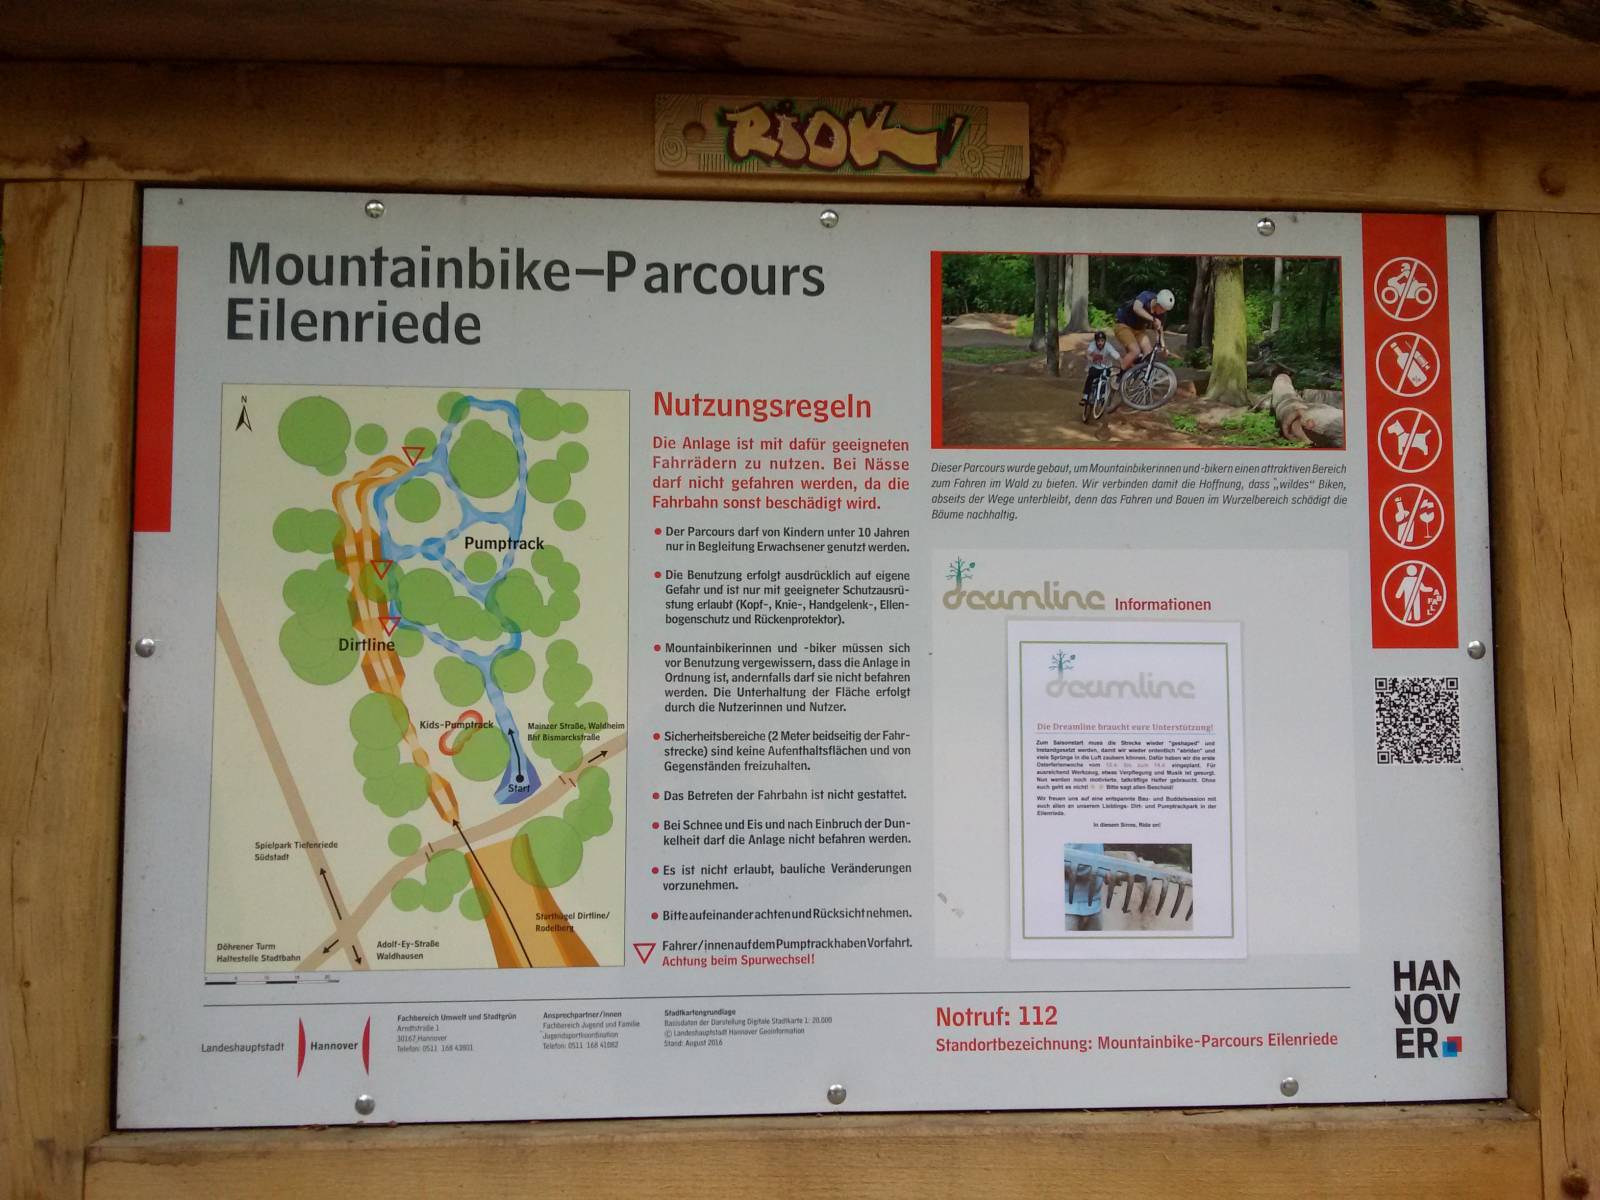 Spielplatz Mountainbike-Parcours Eilenriede in Hannover